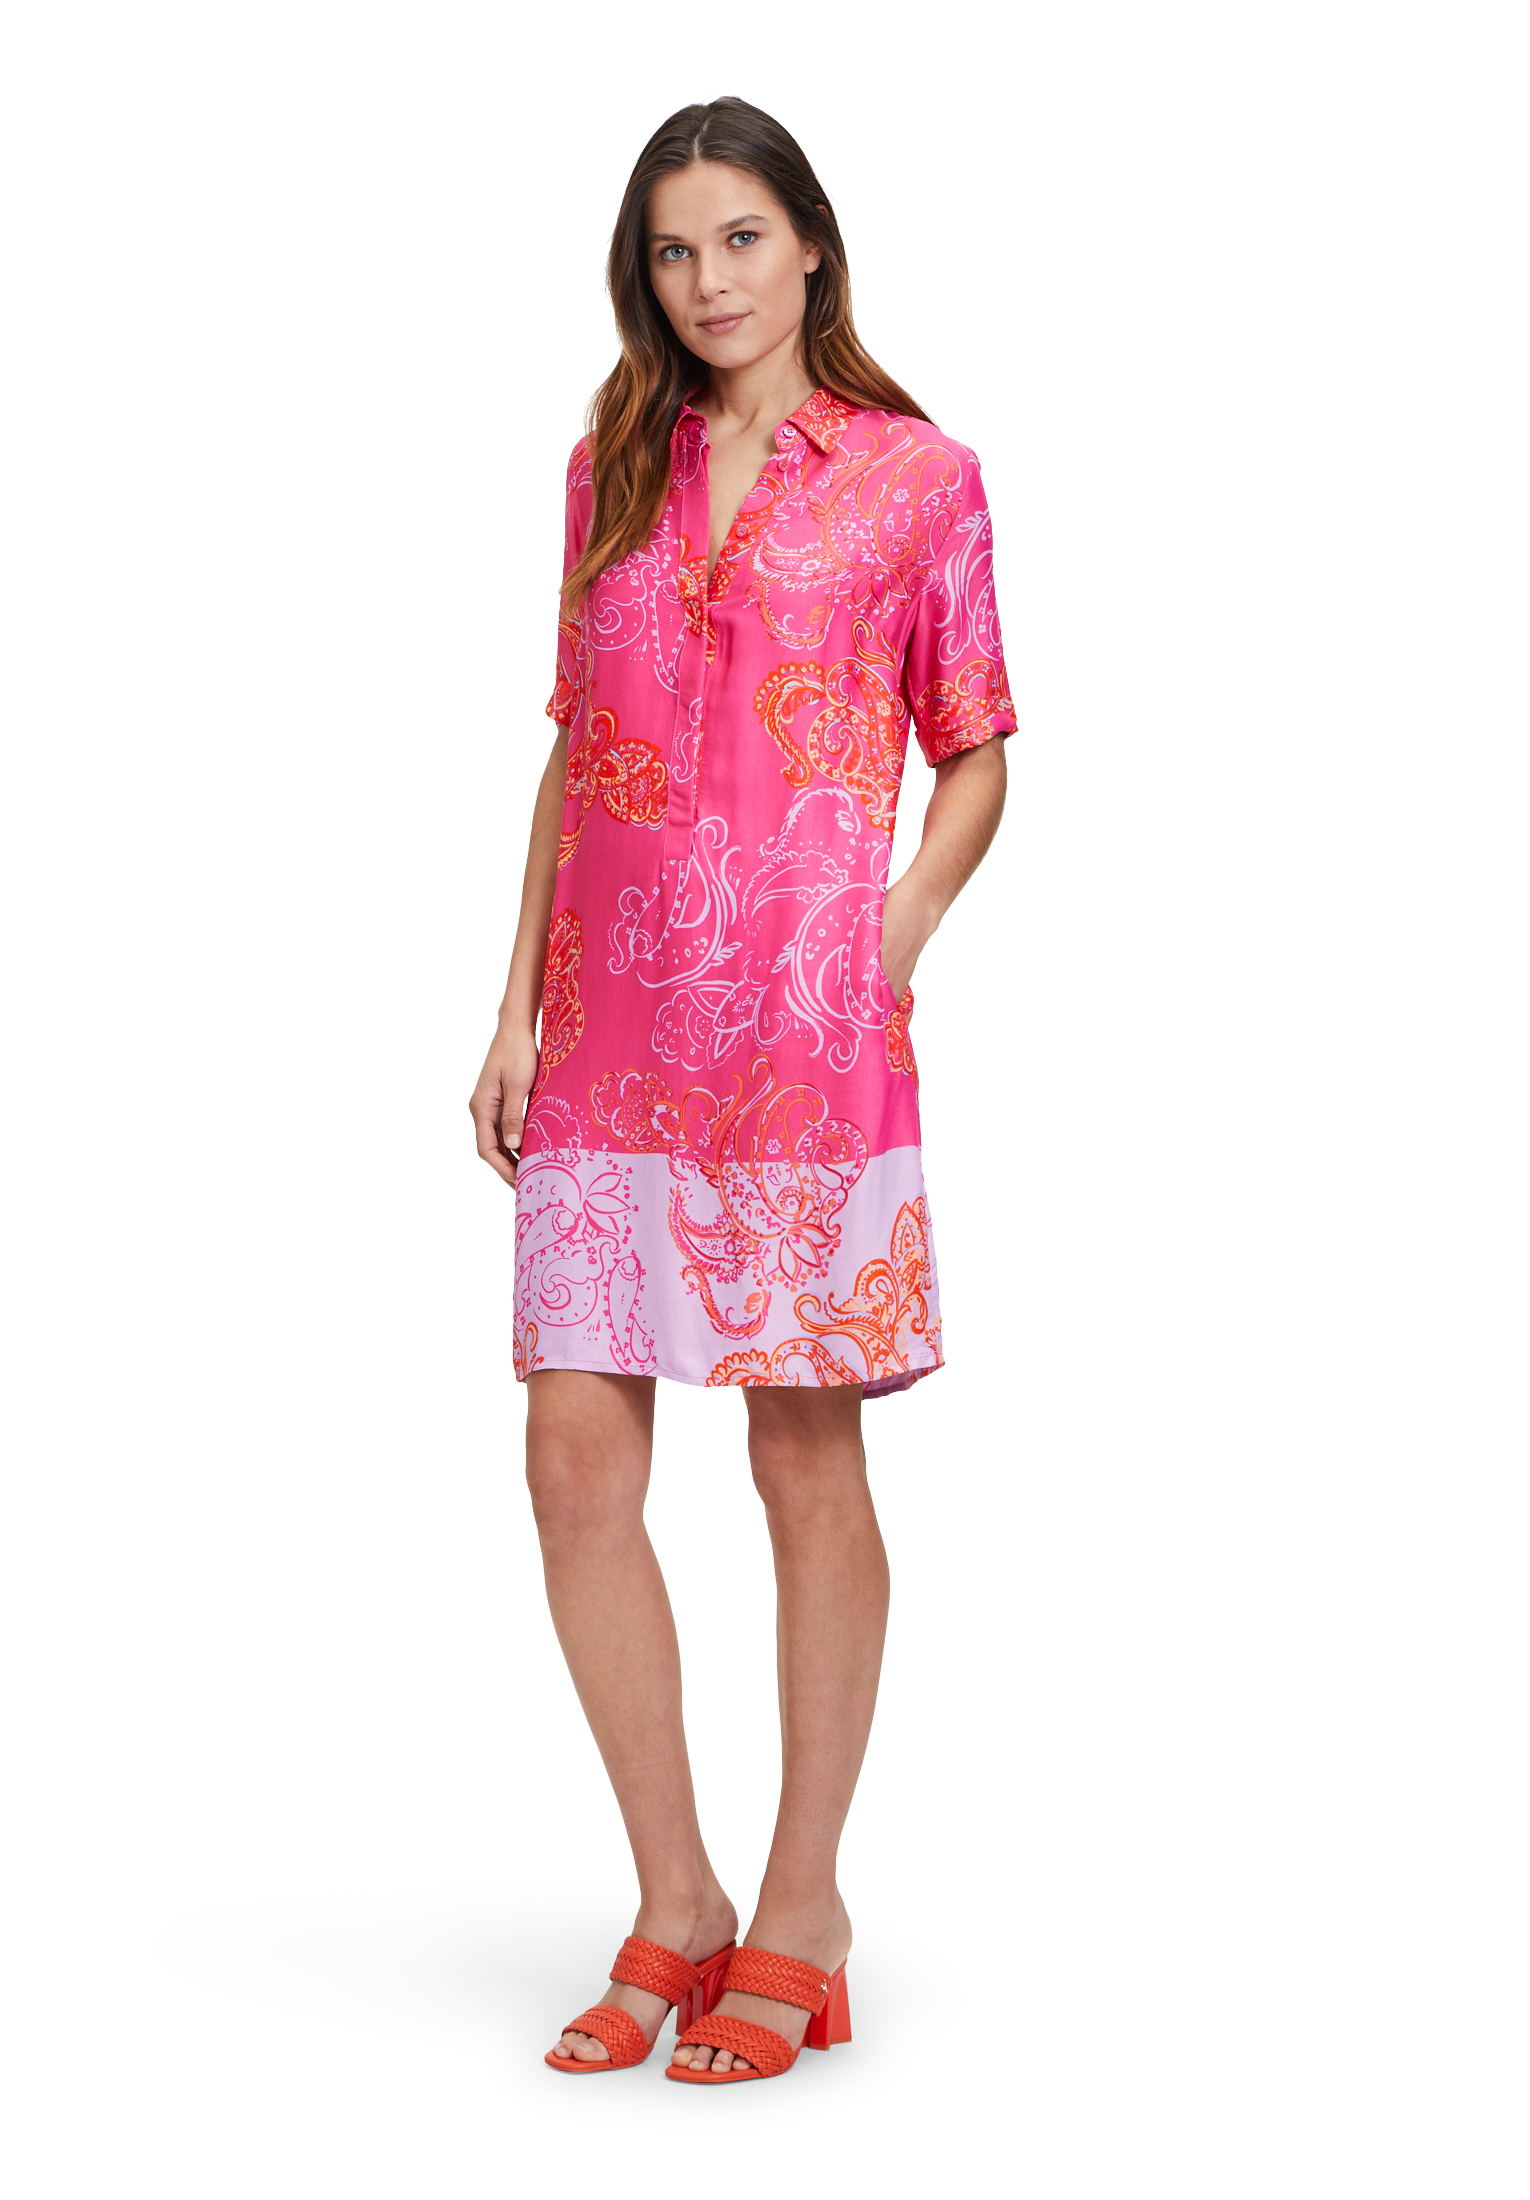 Betty Barclay letní košilové šaty 1547/2586 4843 Růžová 38